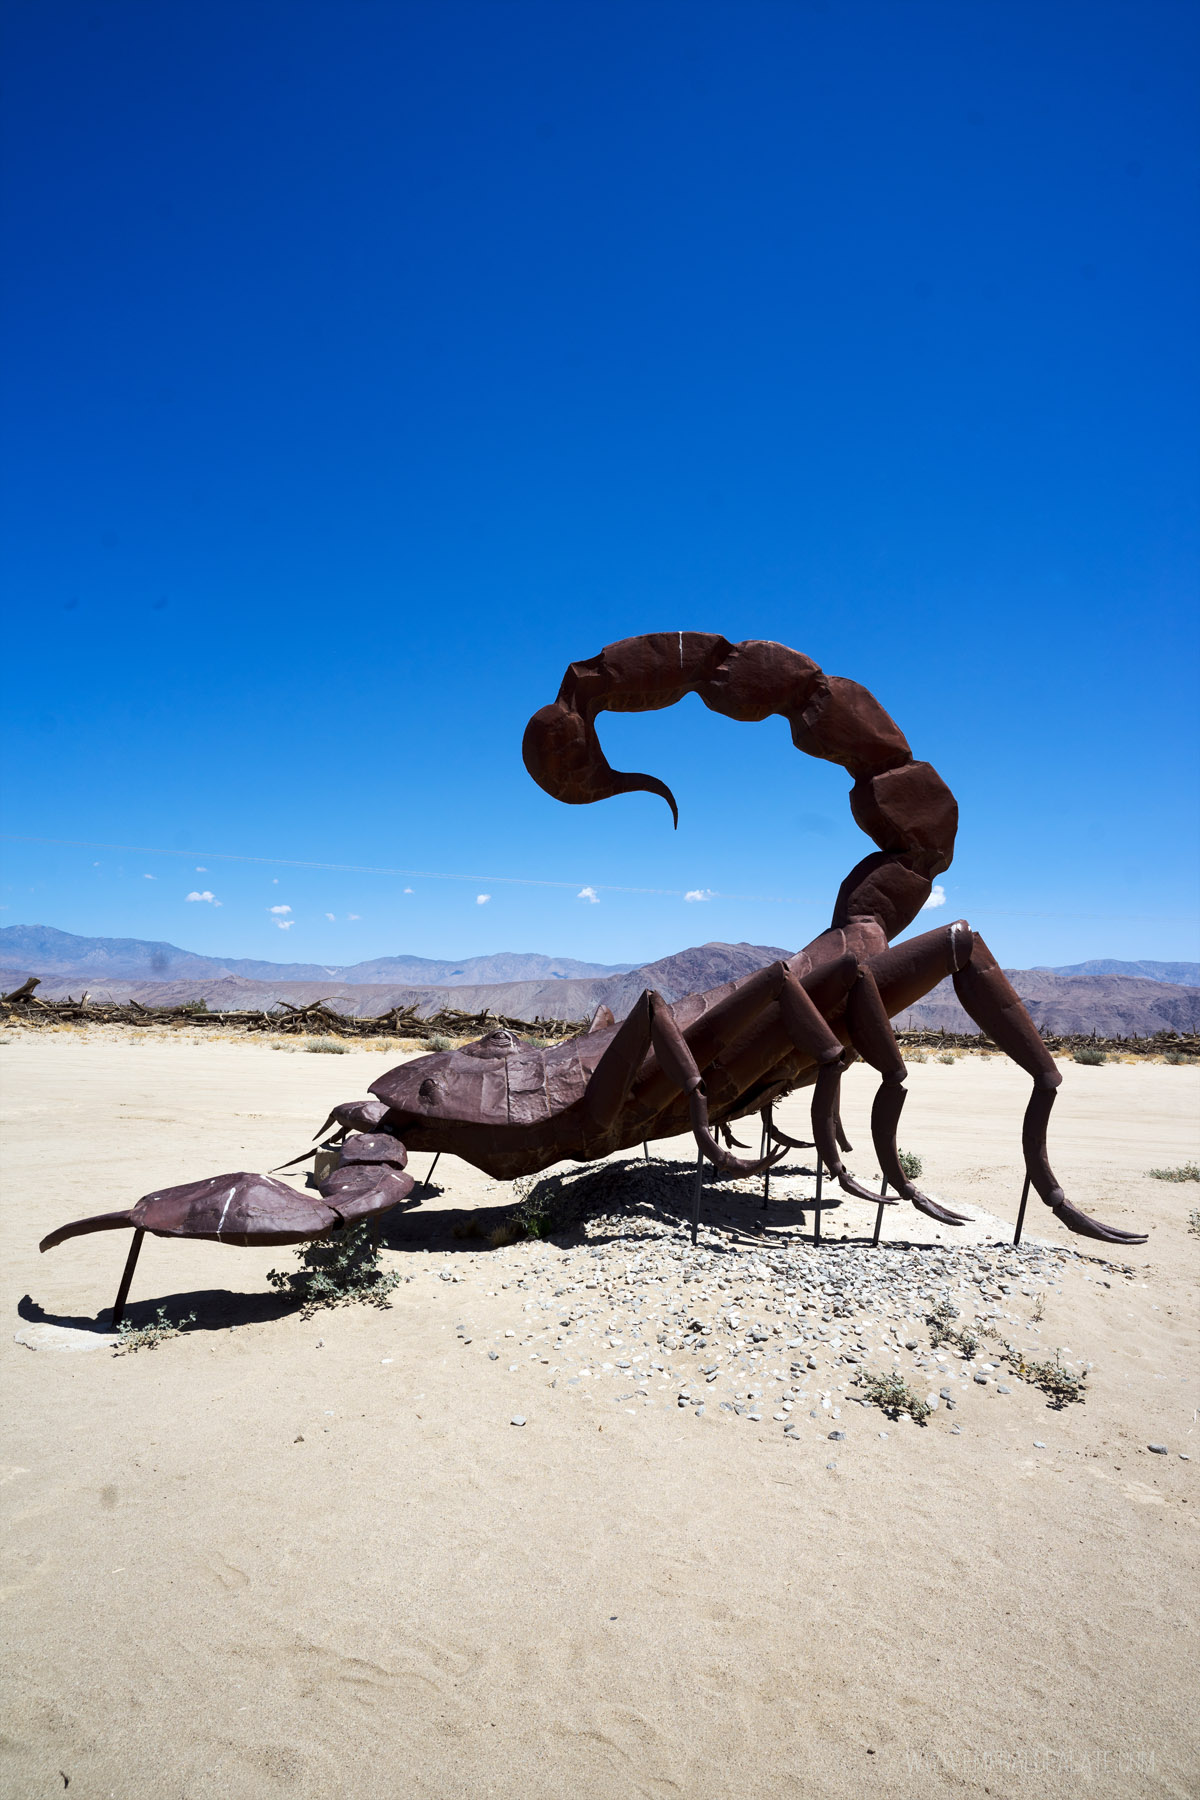 huge scorpion sculpture in the desert